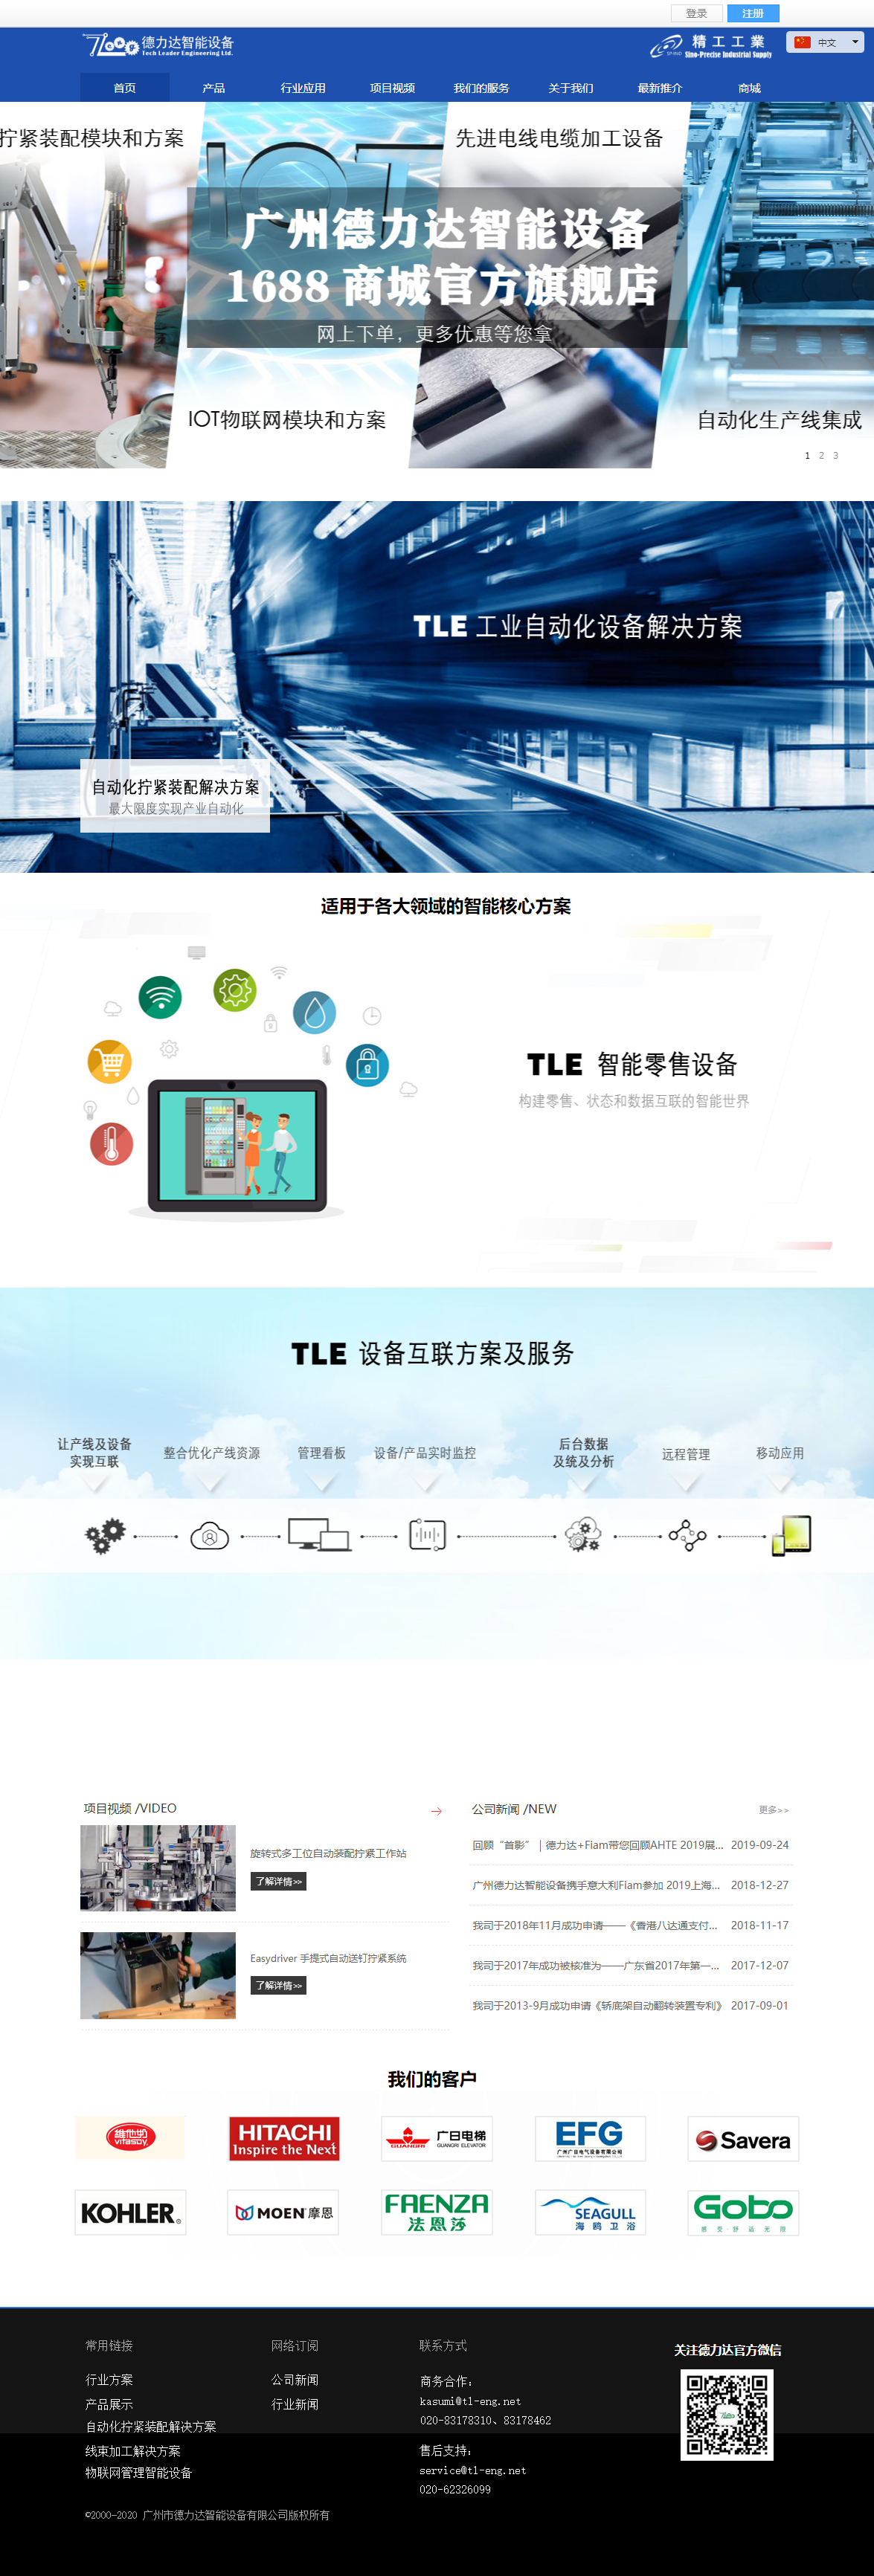 广州市德力达智能设备有限公司网站案例